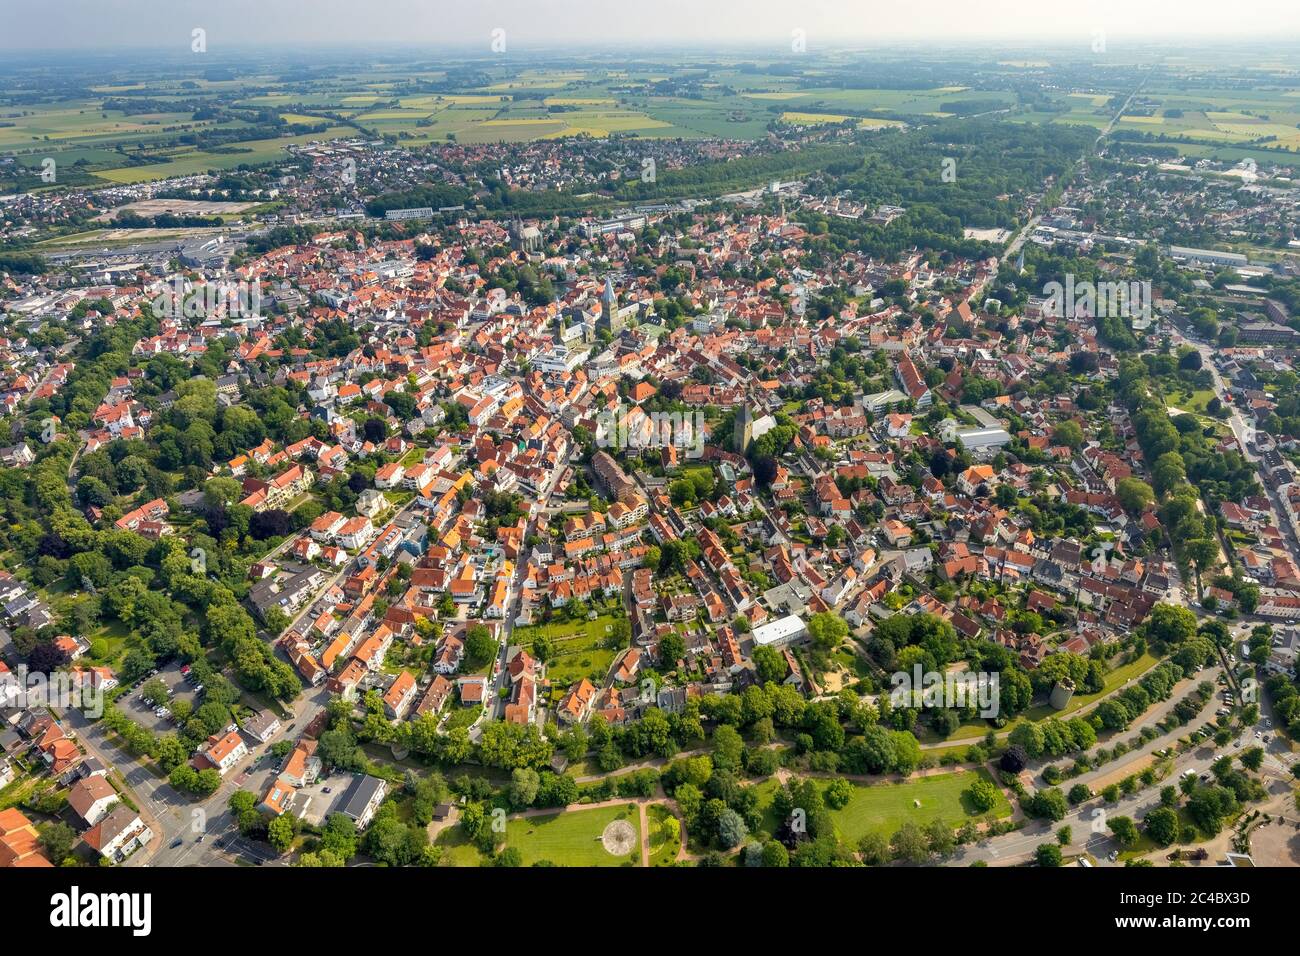 Vista del centro de la ciudad desde el sur, 06.07.2019, vista aérea, Alemania, Renania del Norte-Westfalia, Soest Foto de stock